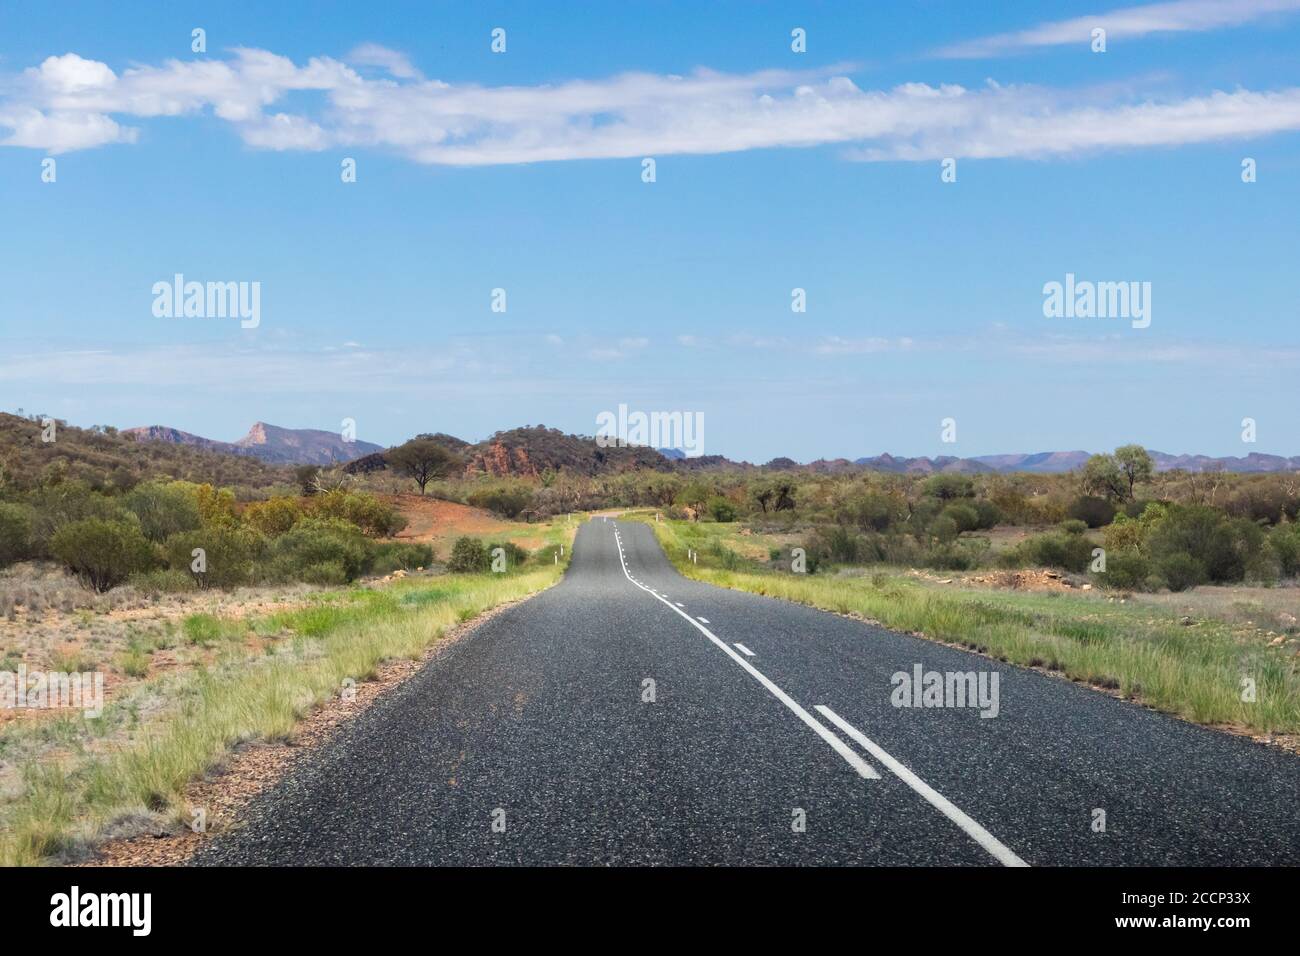 Fahrt über die MacDonnell Ranges. Berge im Hintergrund. Leere Straße, keine Autos, keine Schilder. Grüne Vegetation und Busch. Australien Stockfoto